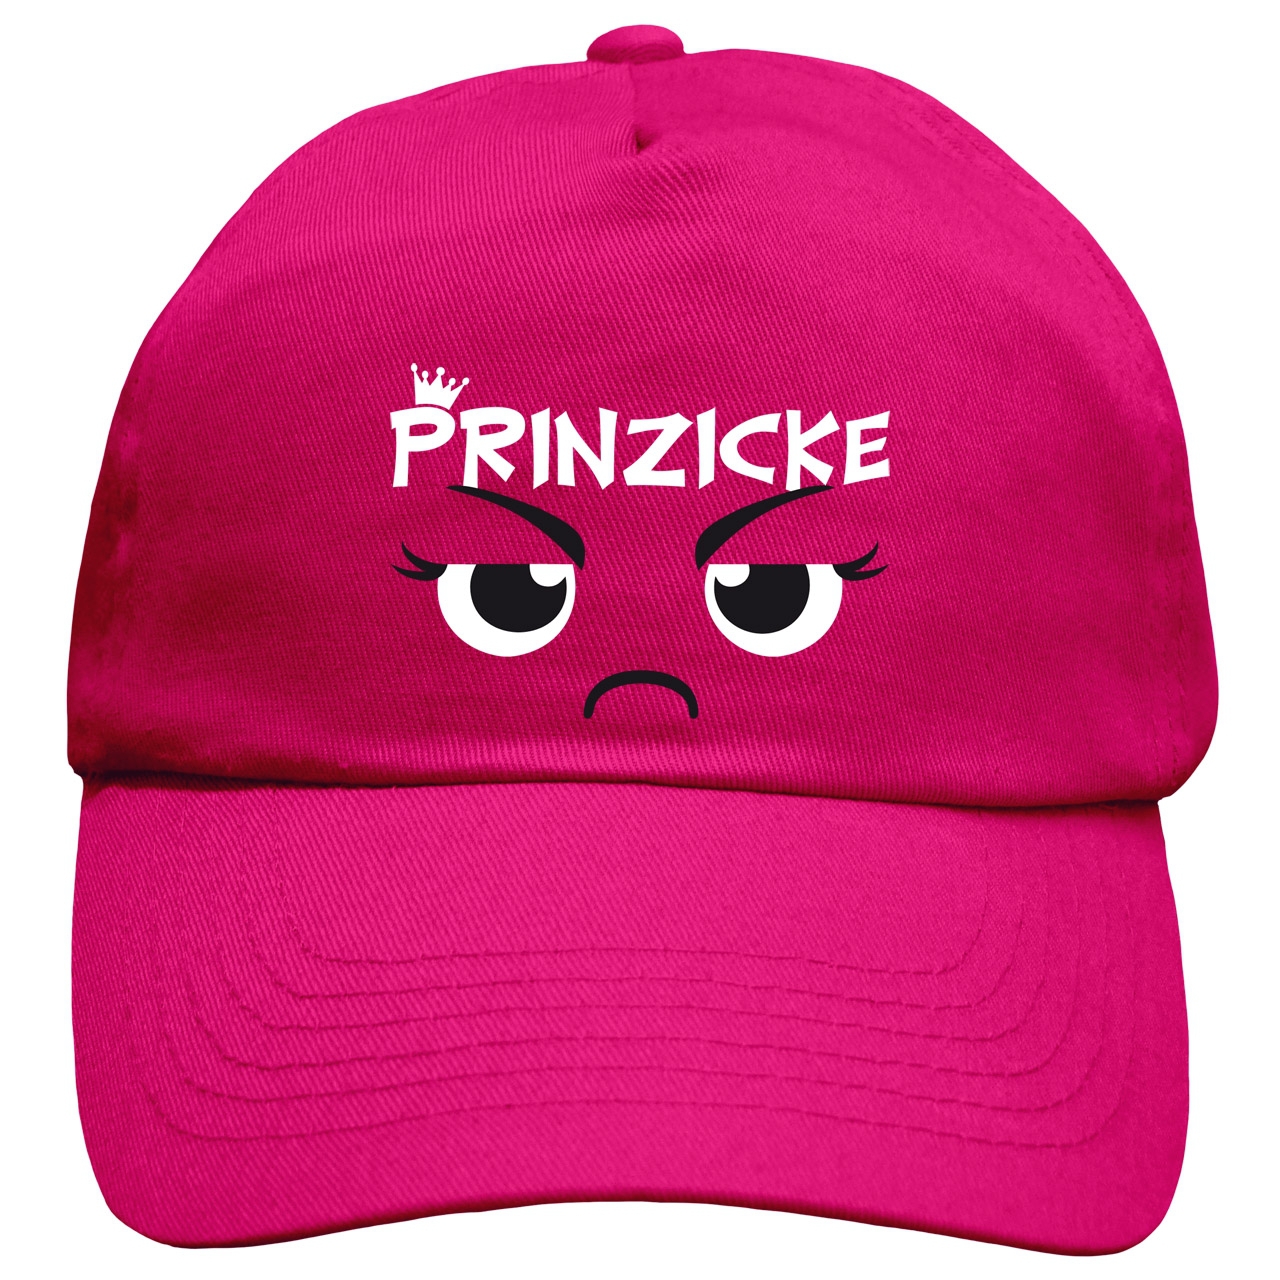 Prinzicke Cap Rundschirm pink